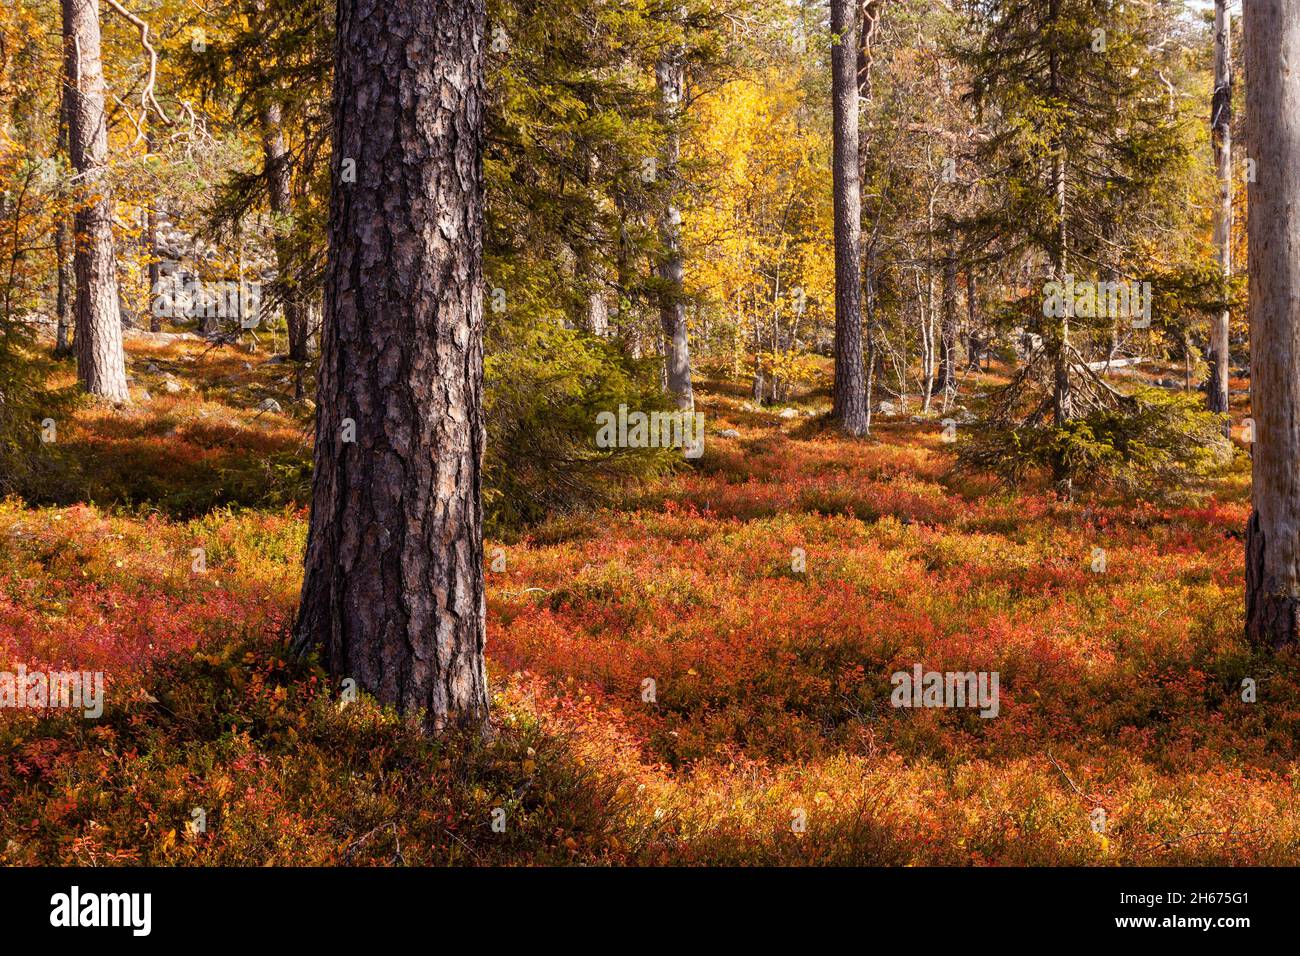 Une vieille forêt de taïga automnale avec un sol forestier chaud et coloré pendant le feuillage d'automne dans le nord de la Finlande près de Salla. Banque D'Images